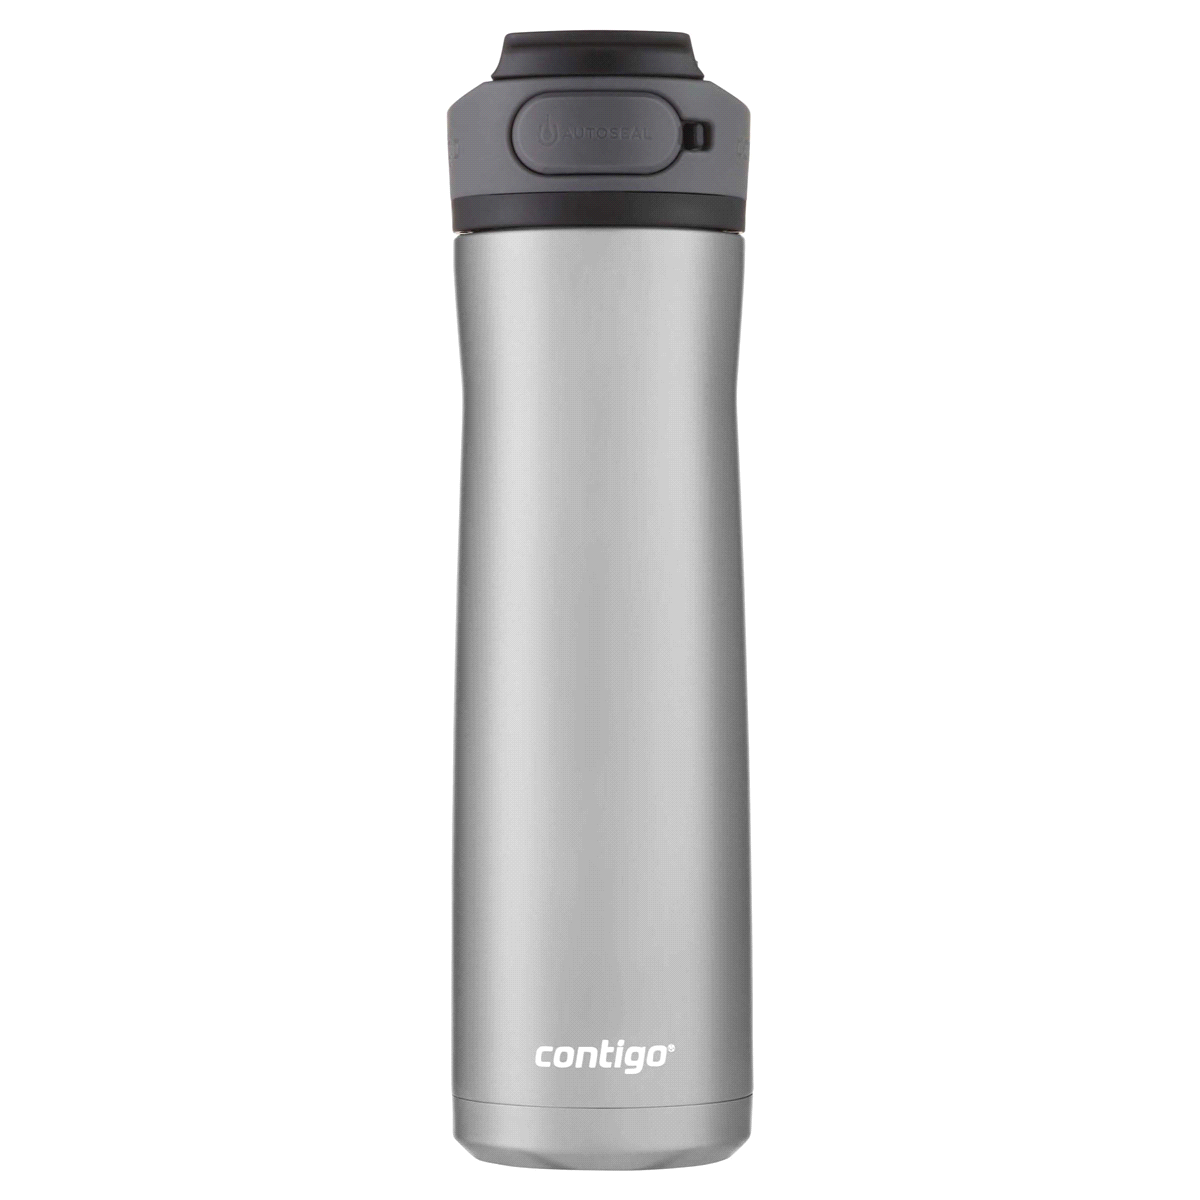 Contigo Cortland 2.0 Water Bottle, 24 oz - Licorice